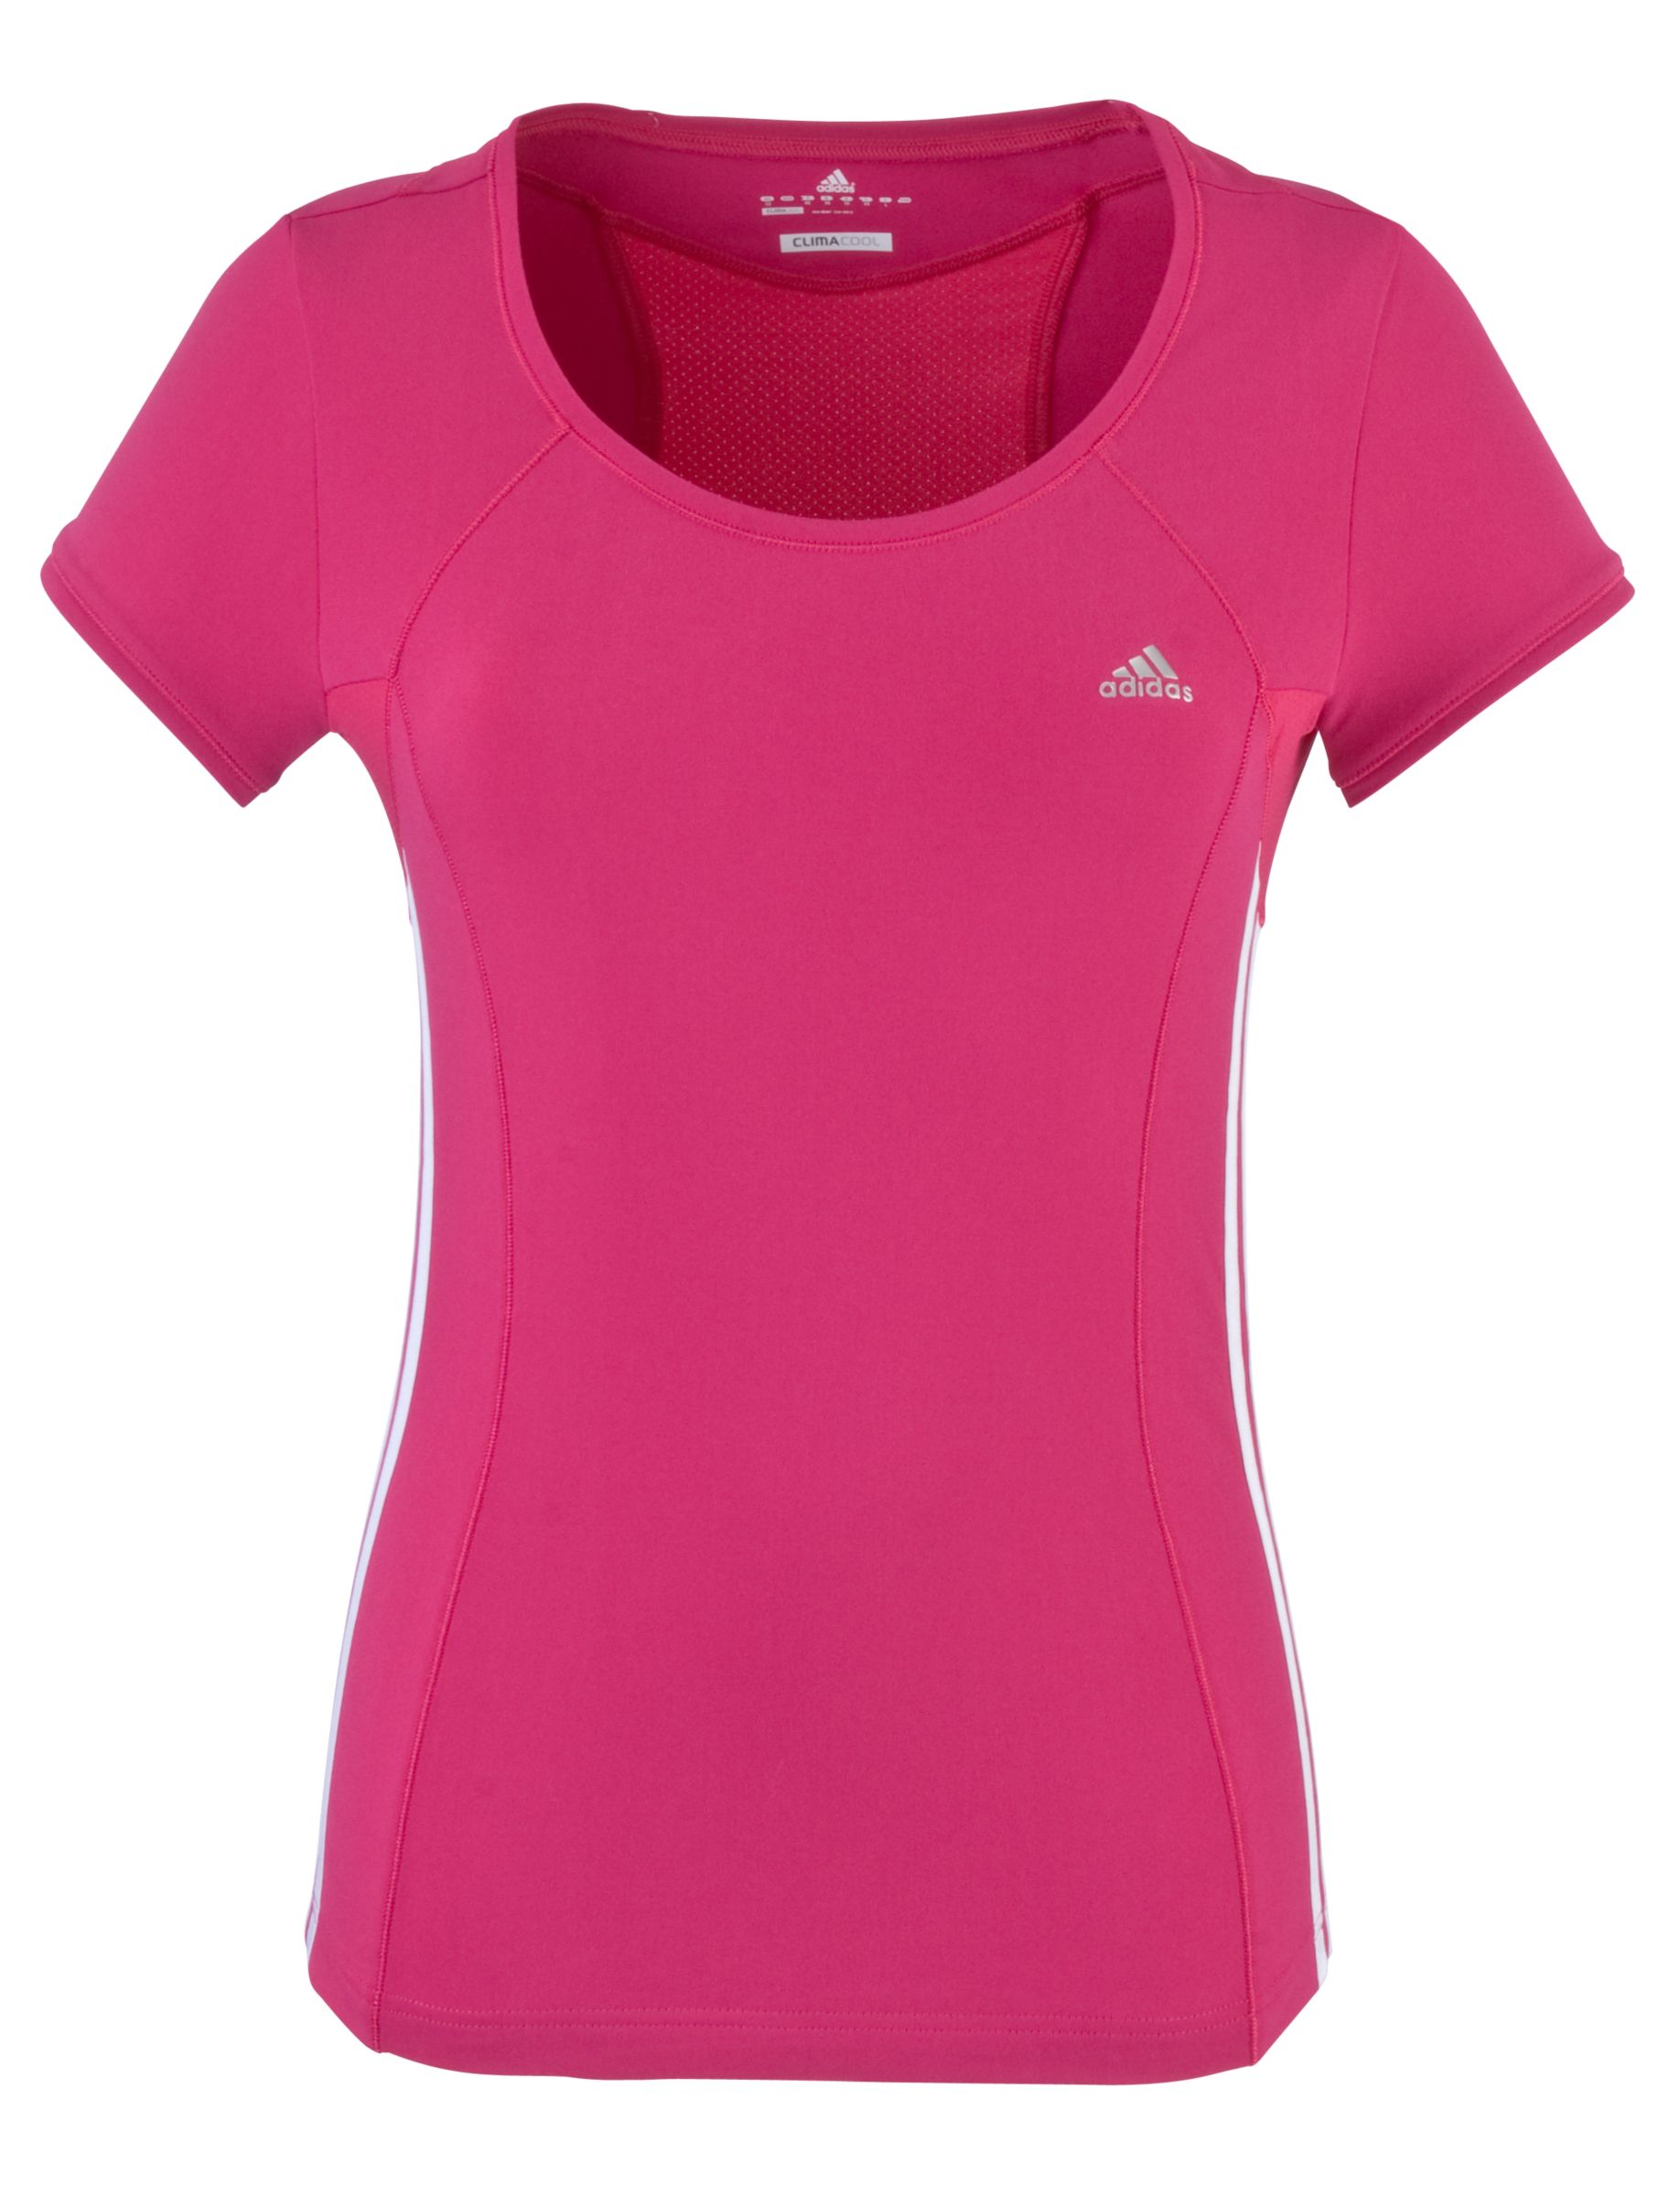 Adidas Clima 365 Core T-Shirt, Pink